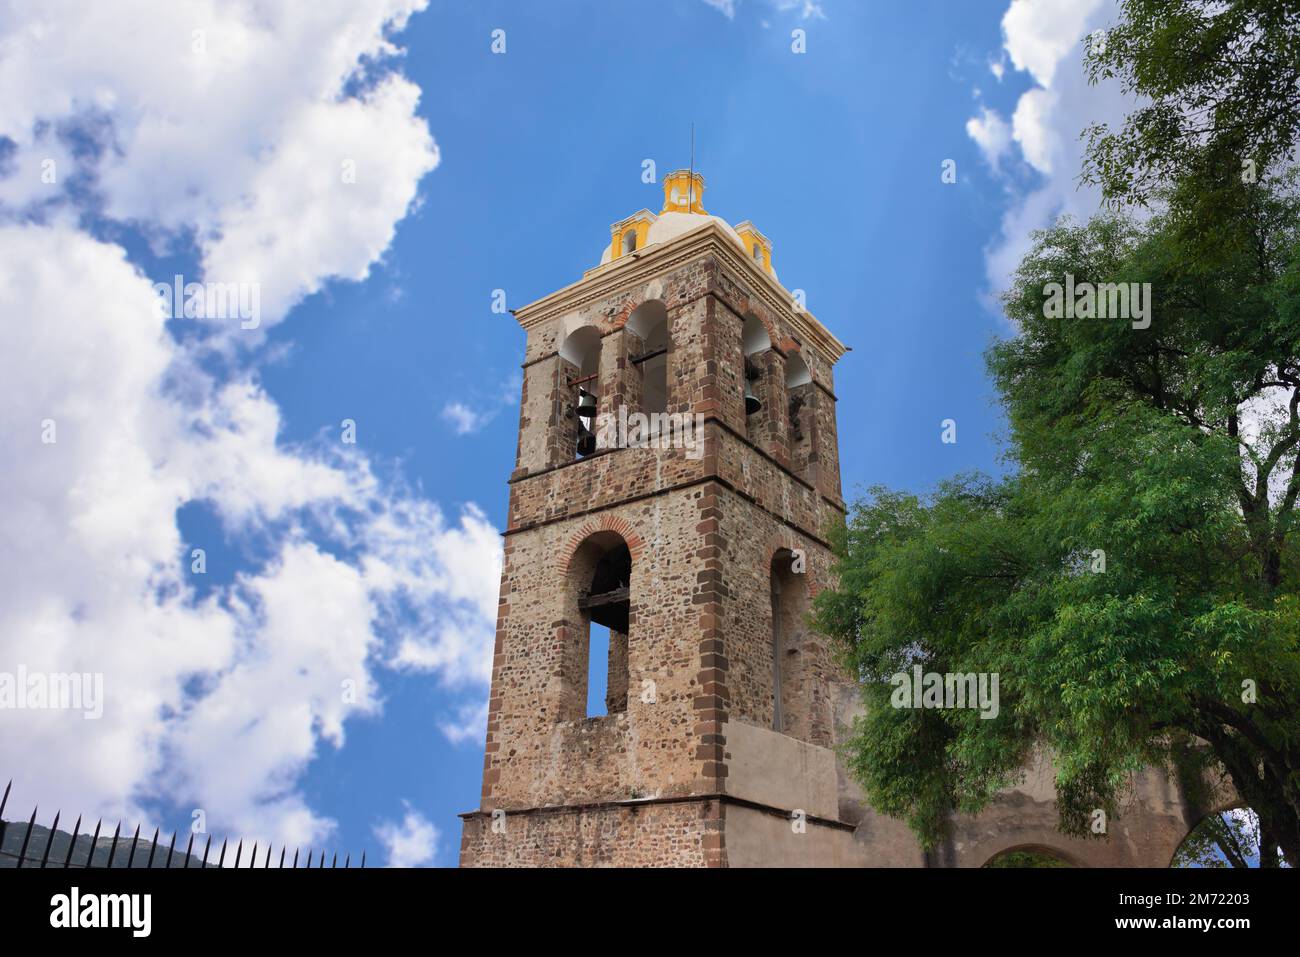 Tlaxcala, Tlaxcala, 09 18 22, point de repère pour les touristes, clocher de l'ancien couvent de notre-Dame de l'Assomption, jour d'été avec ciel bleu Banque D'Images